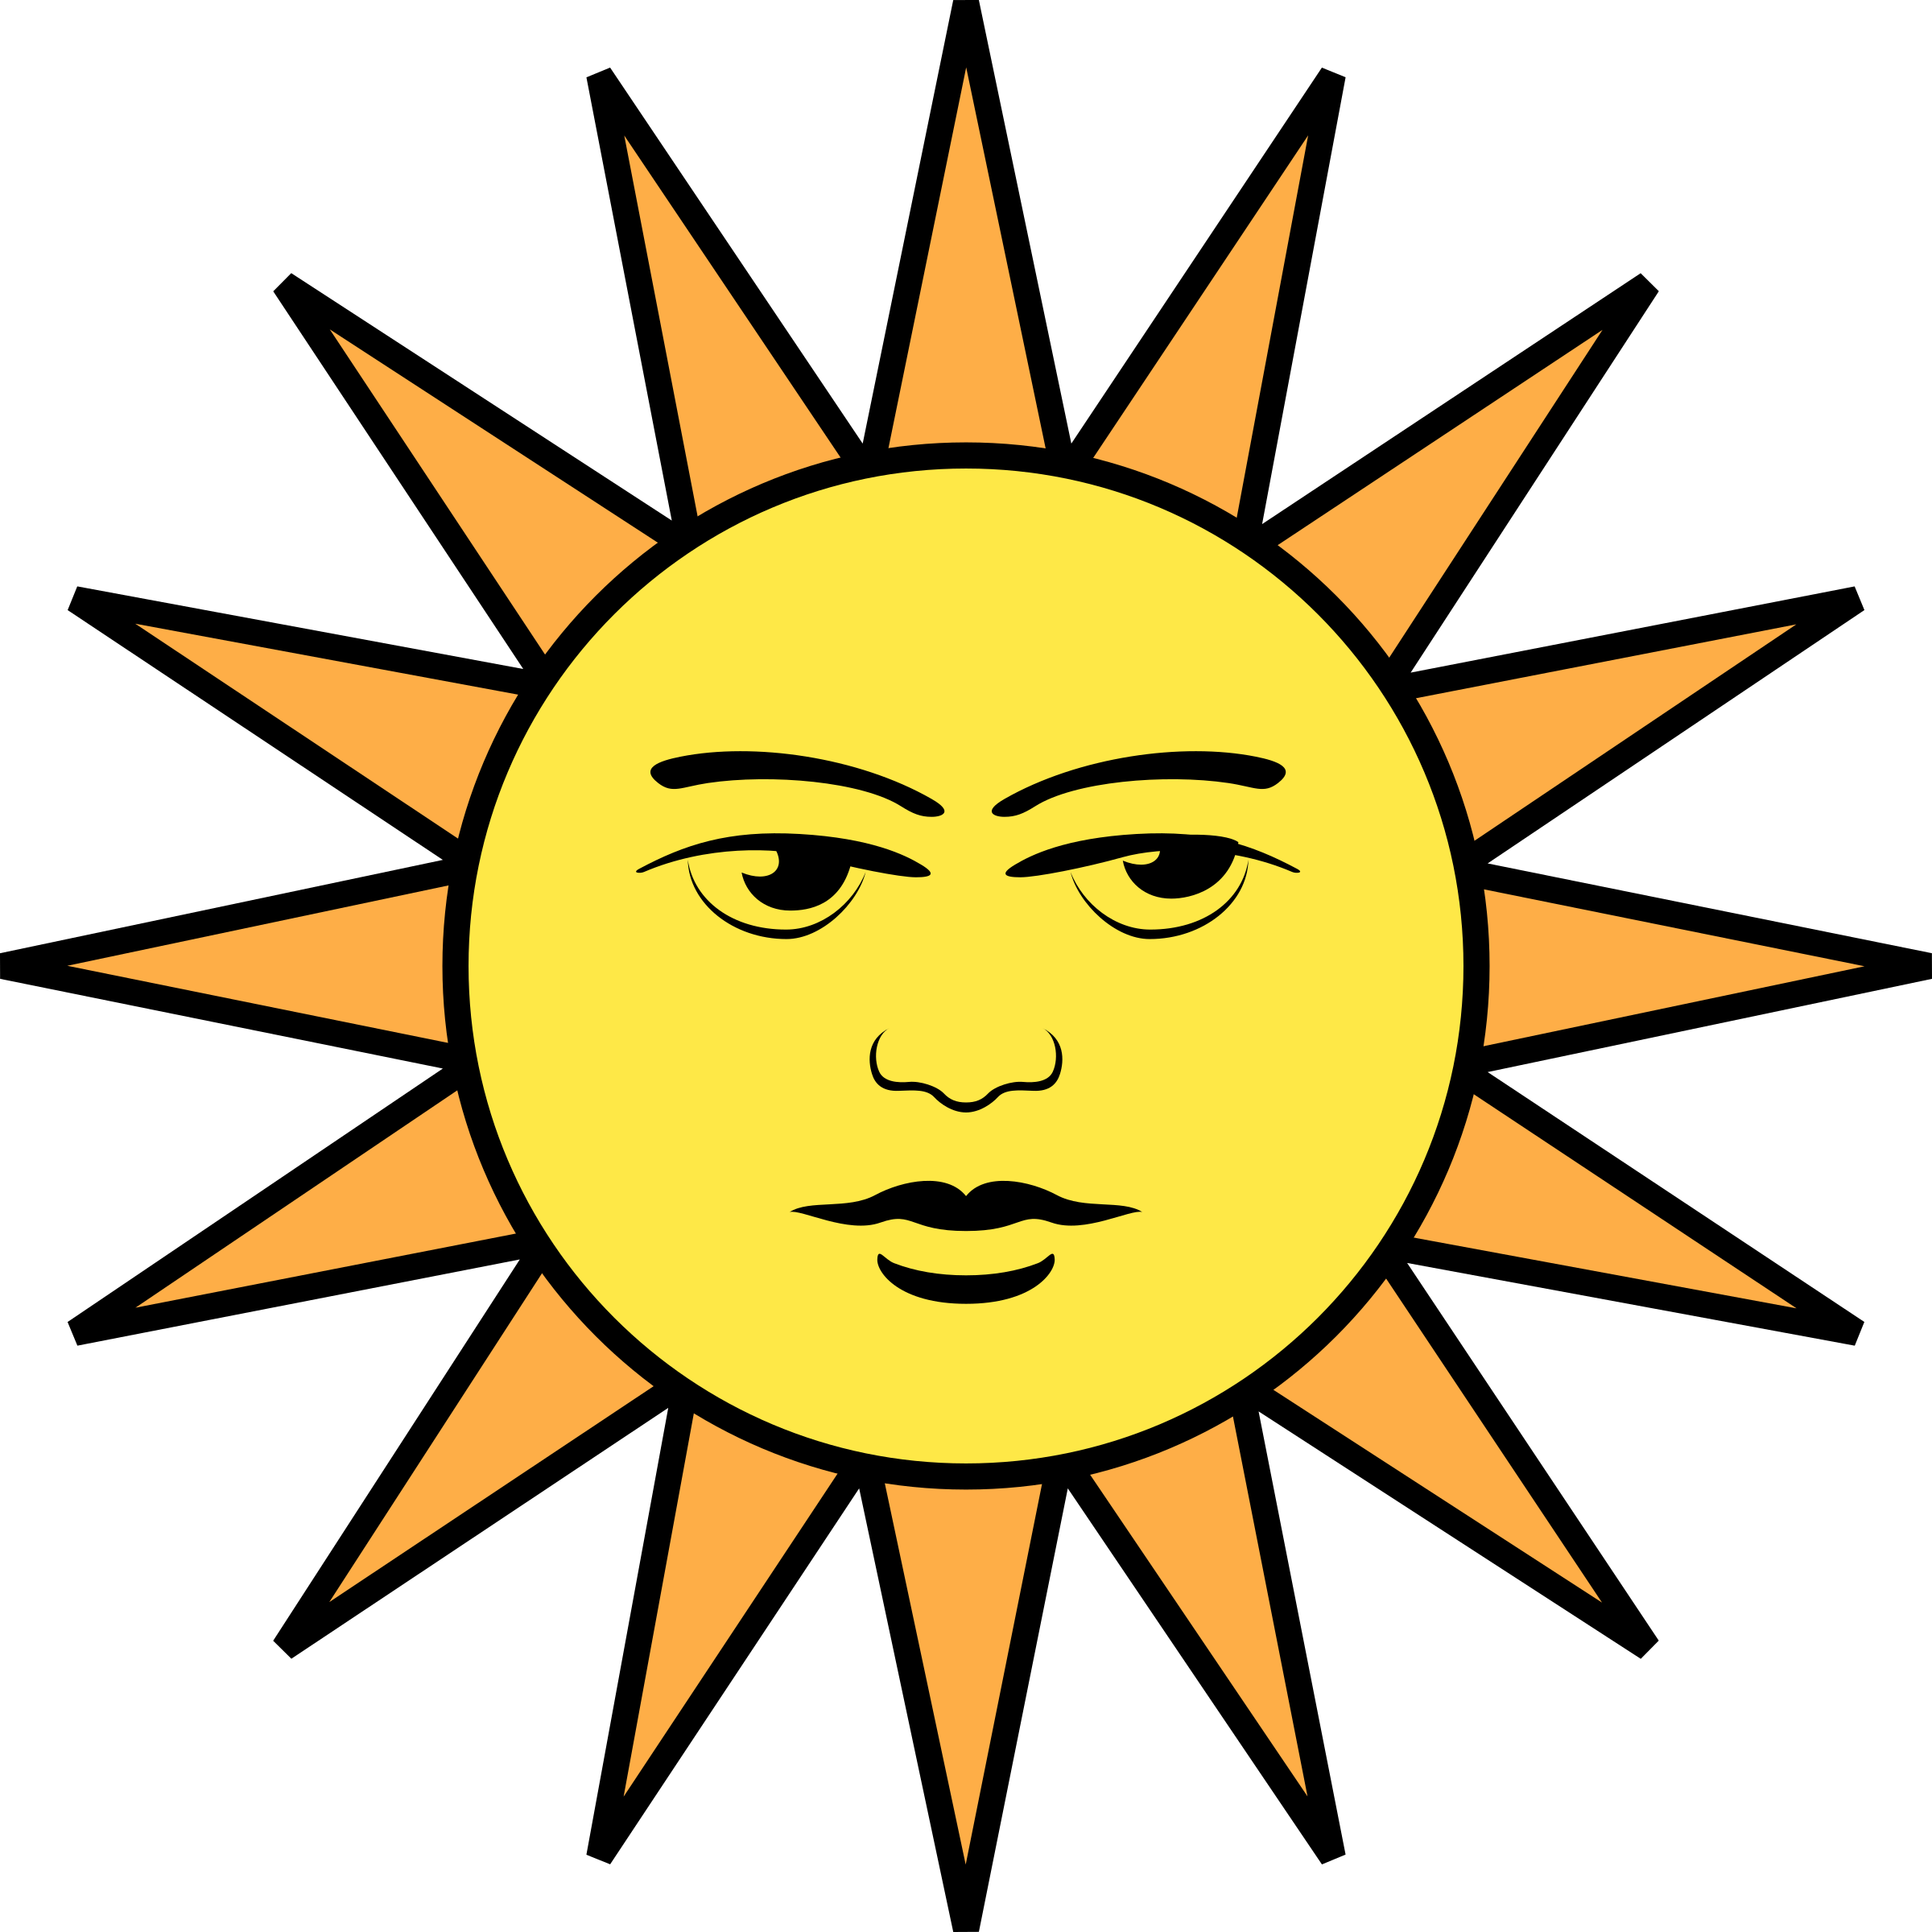 Изображение солнца. Лицом к солнцу. Солнце иллюстрация. Солнышко рисунок.